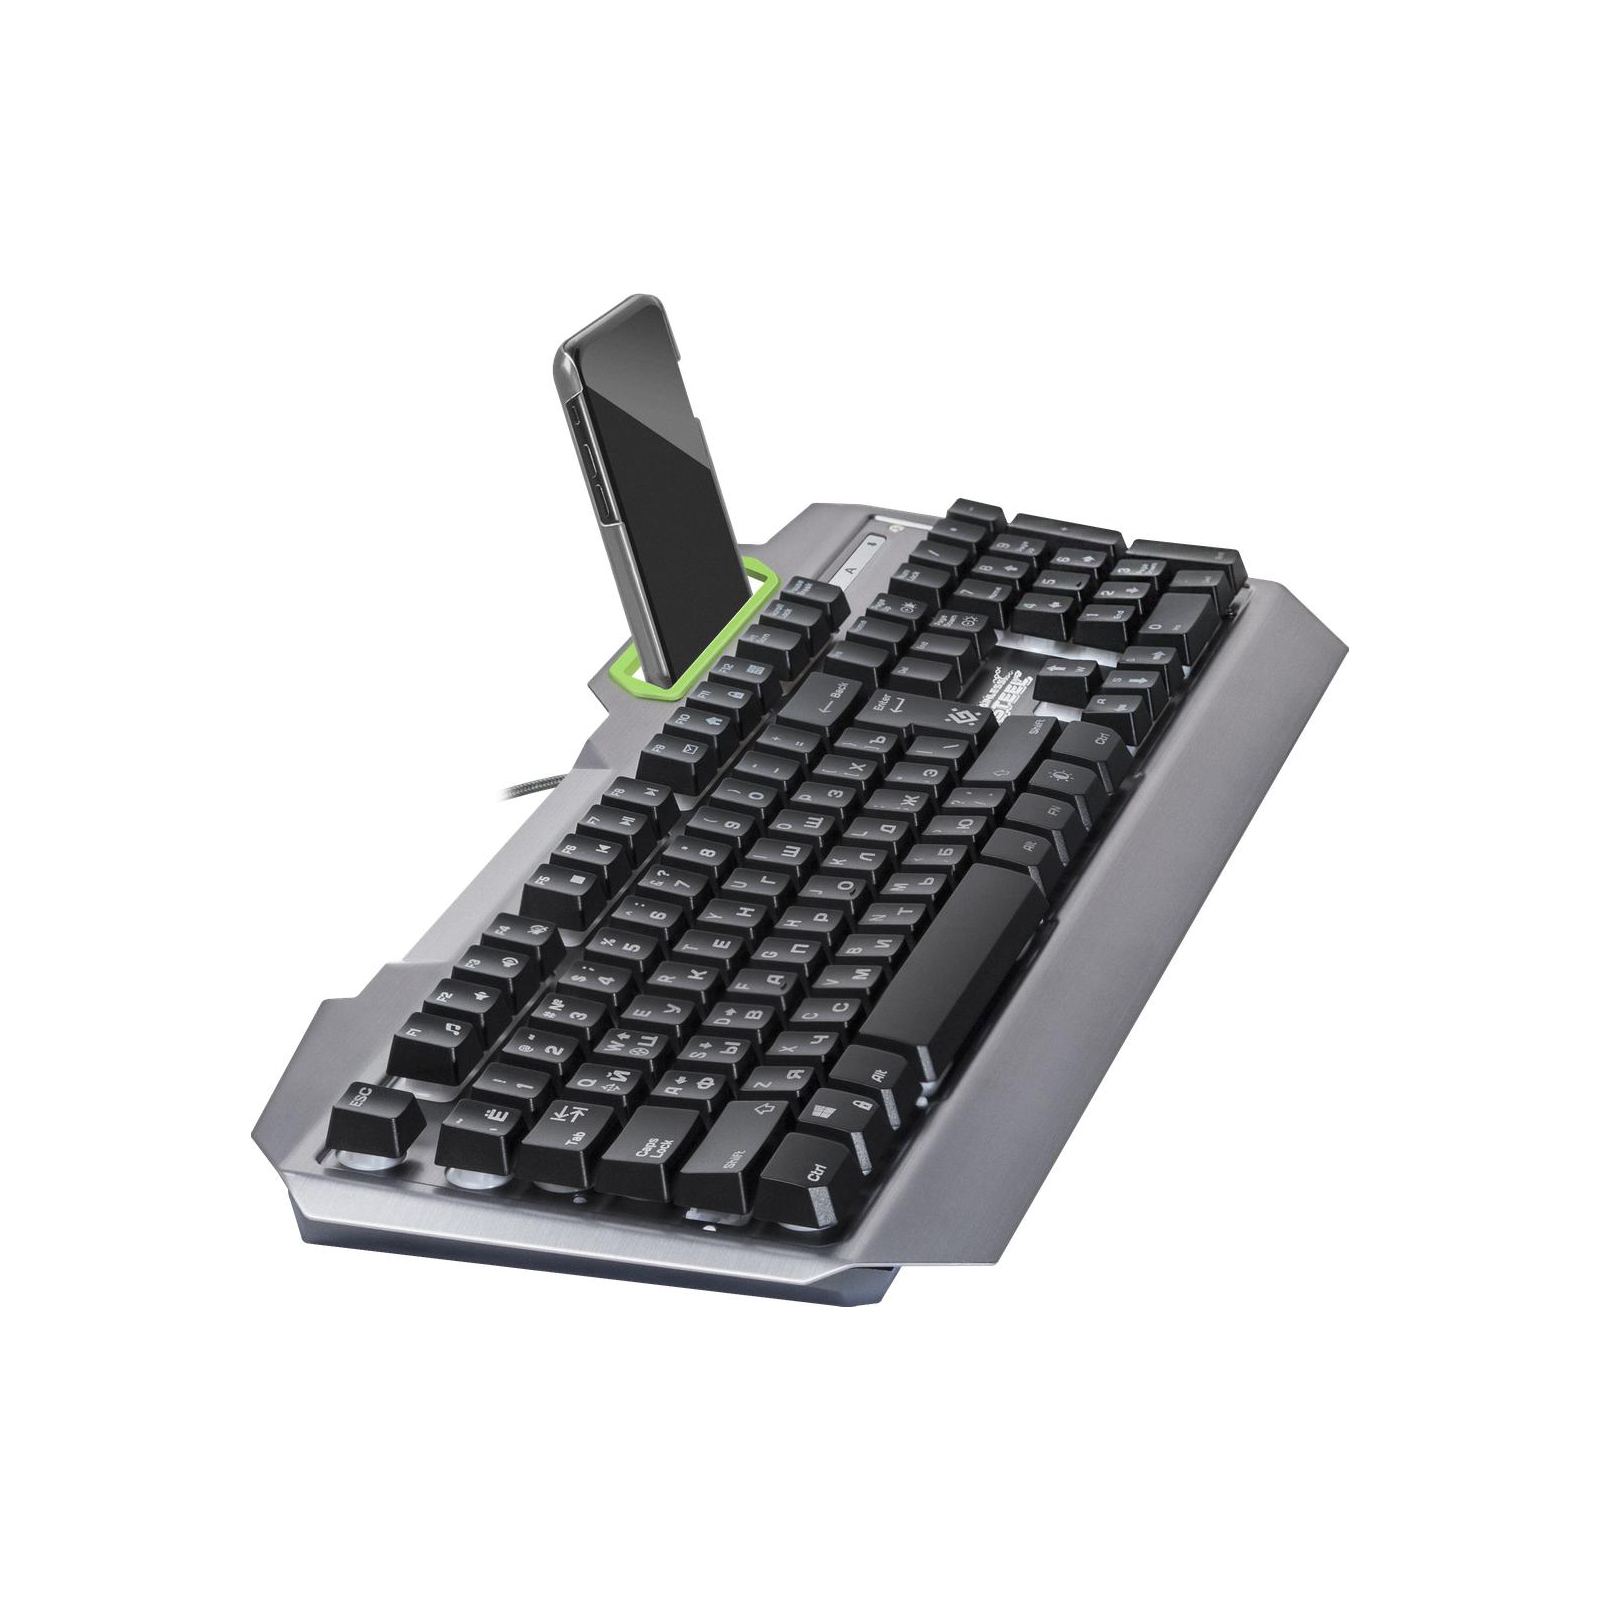 Клавіатура Defender Stainless steel GK-150DL RU RGB (45150) зображення 4